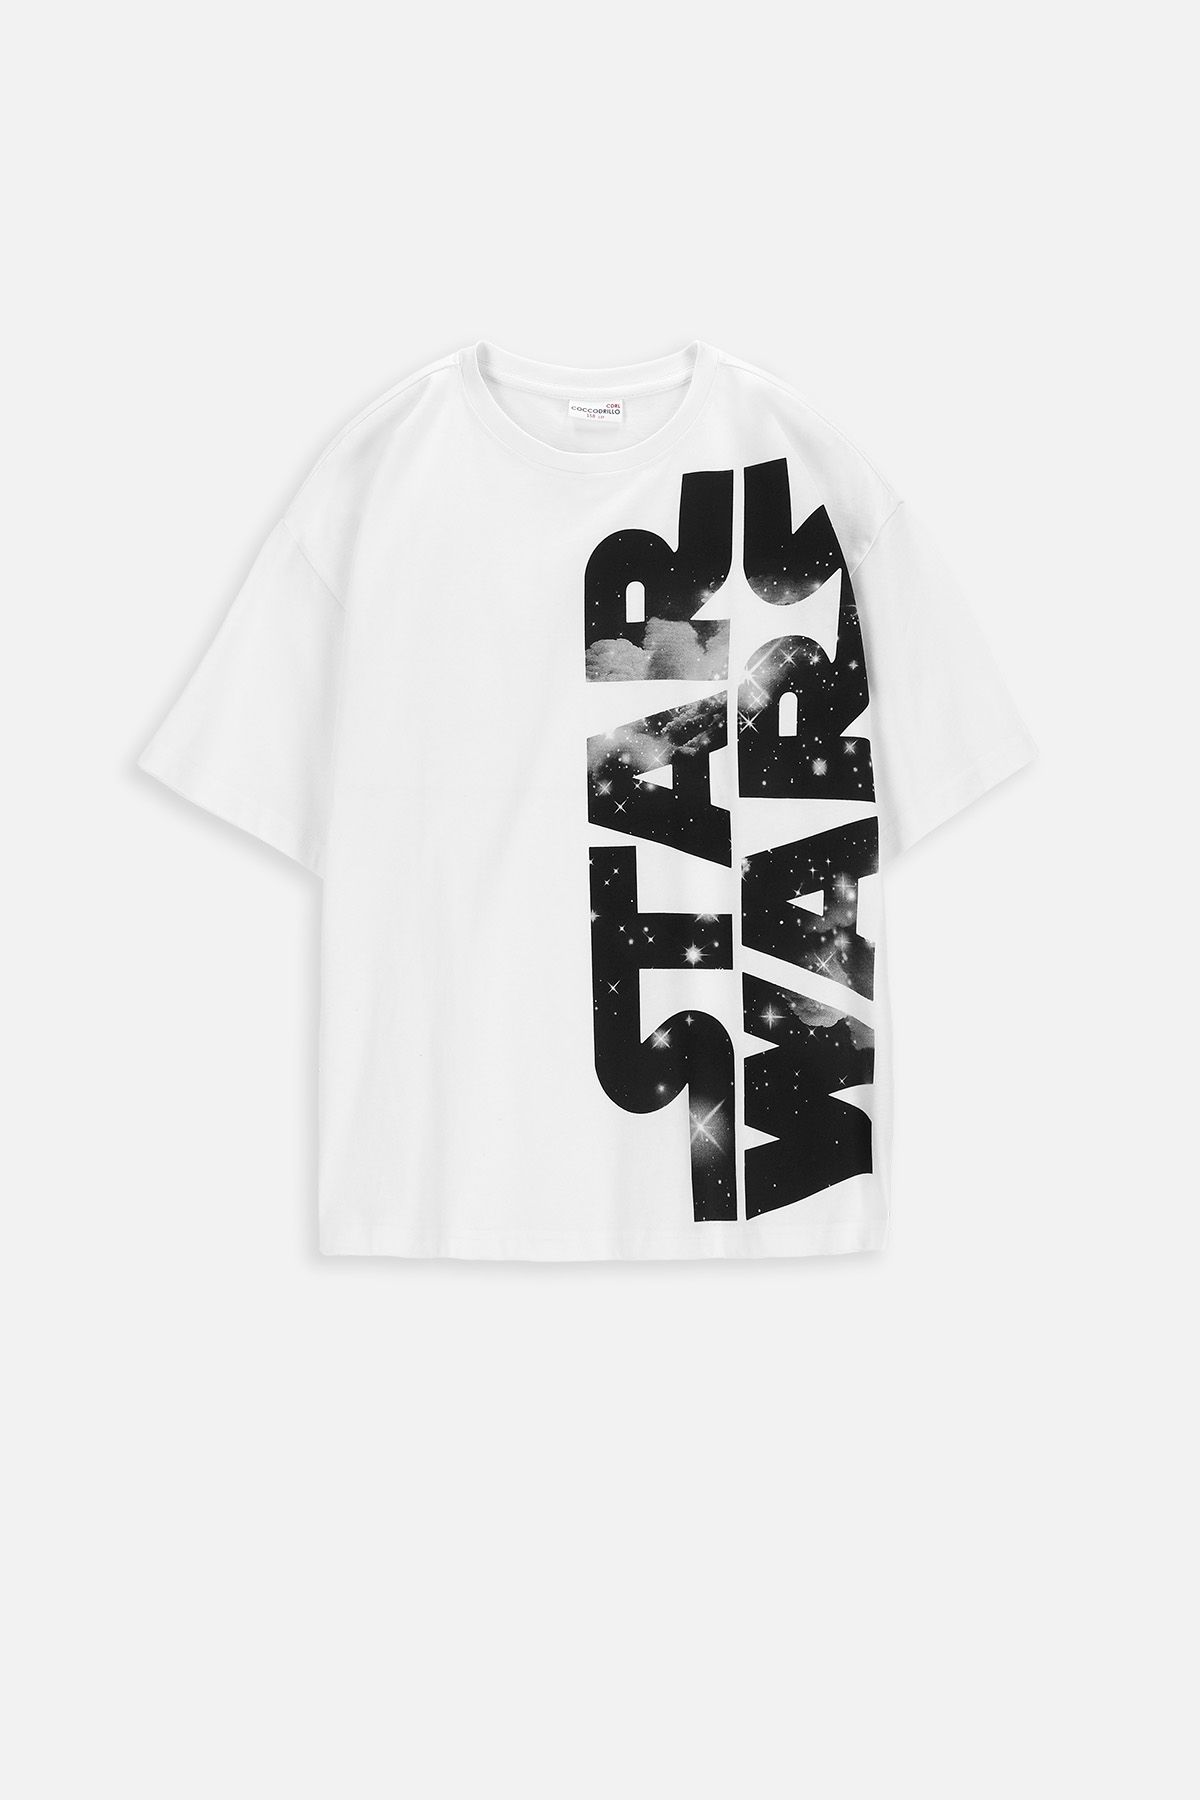 T-shirt z krótkim rękawem biały z napisami, licencja STAR WARS 2228095